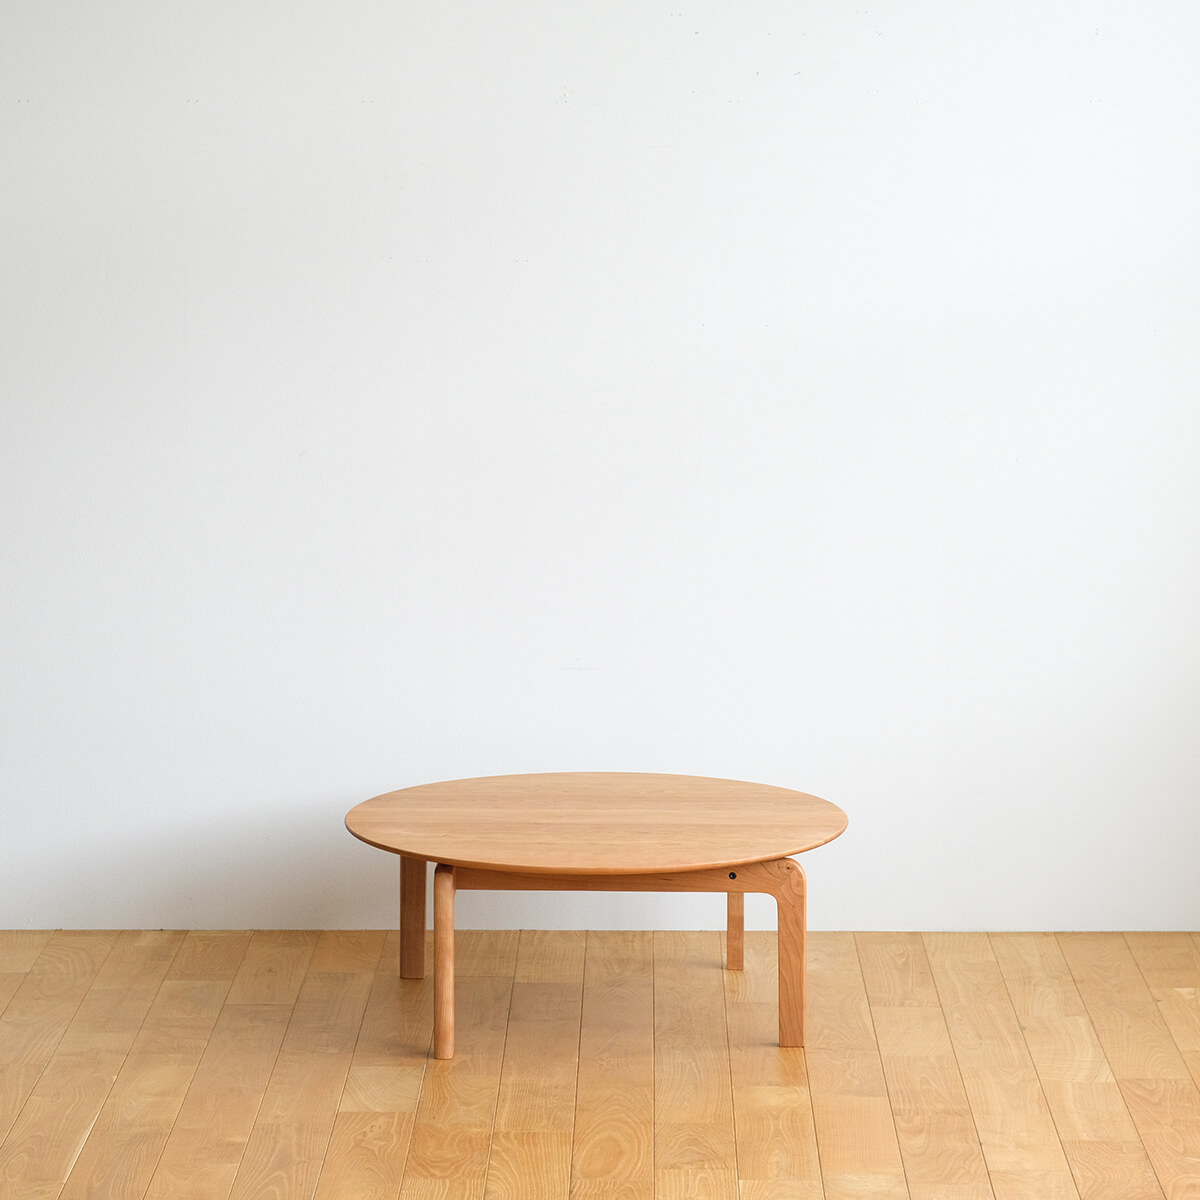 和室にも合う、シンプルな円形ローテーブル